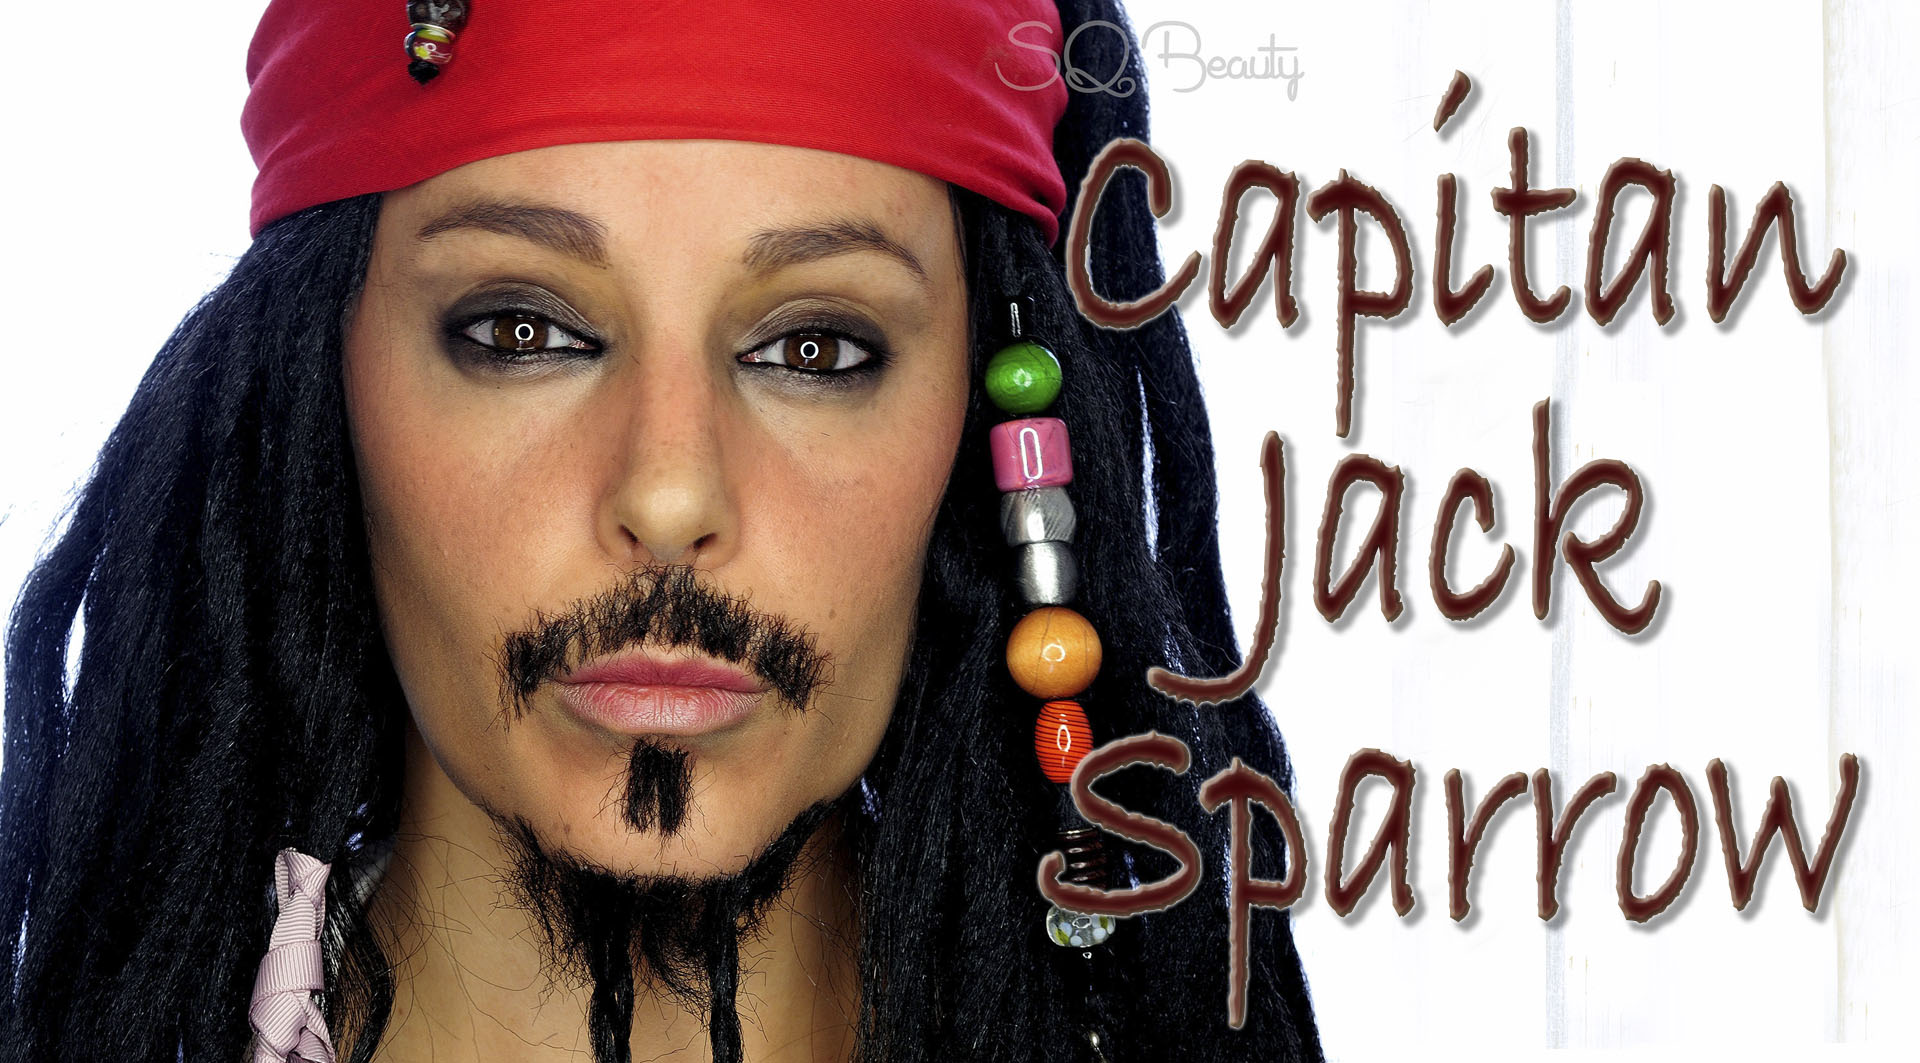 Capitan Jack Sparrow Makeup Tutorial